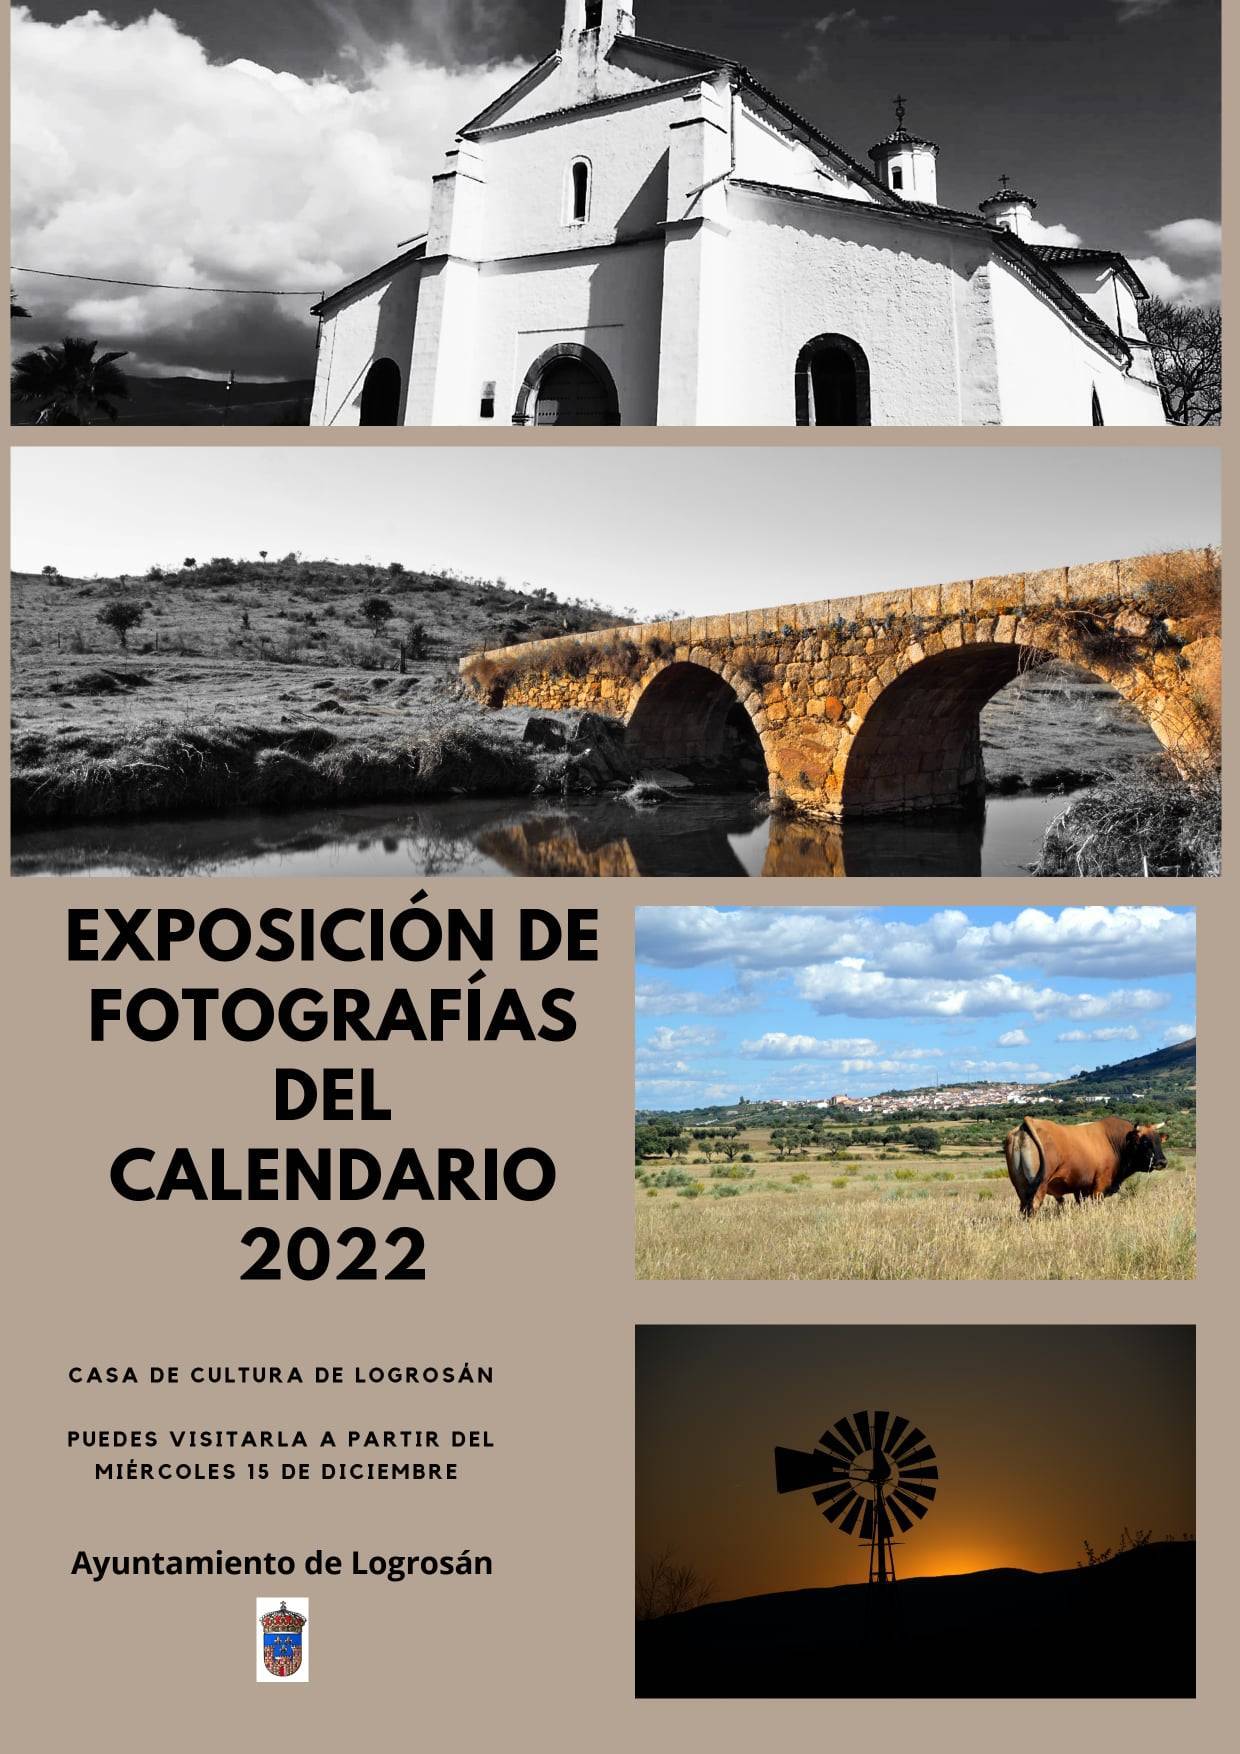 Exposición de fotografías (diciembre 2021) - Logrosán (Cáceres)